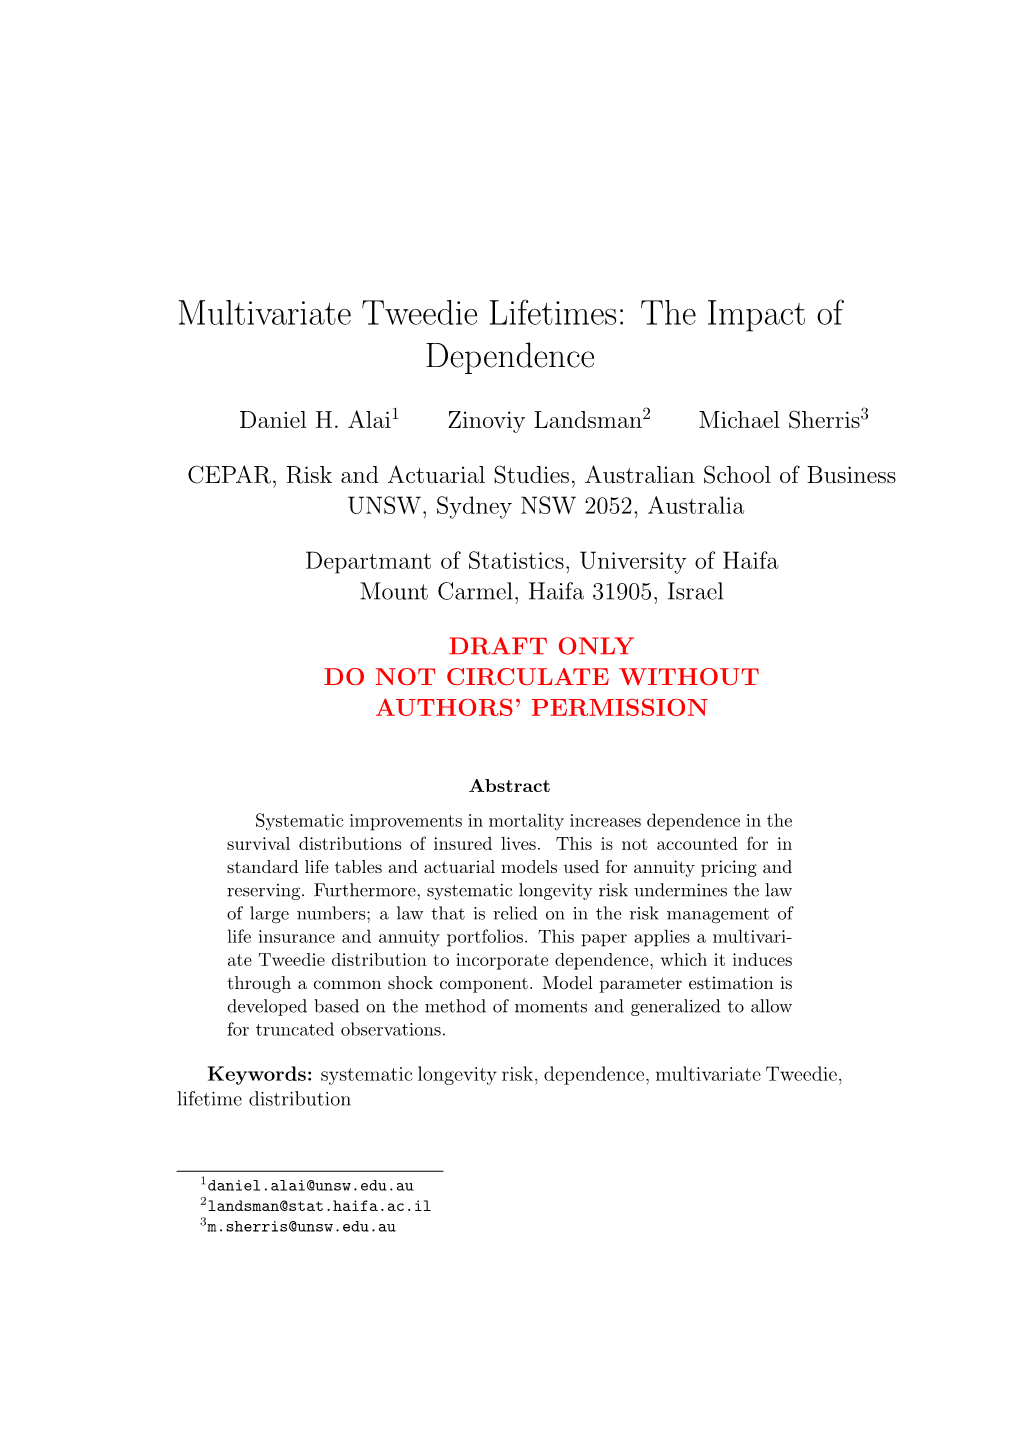 Multivariate Tweedie Lifetimes: the Impact of Dependence